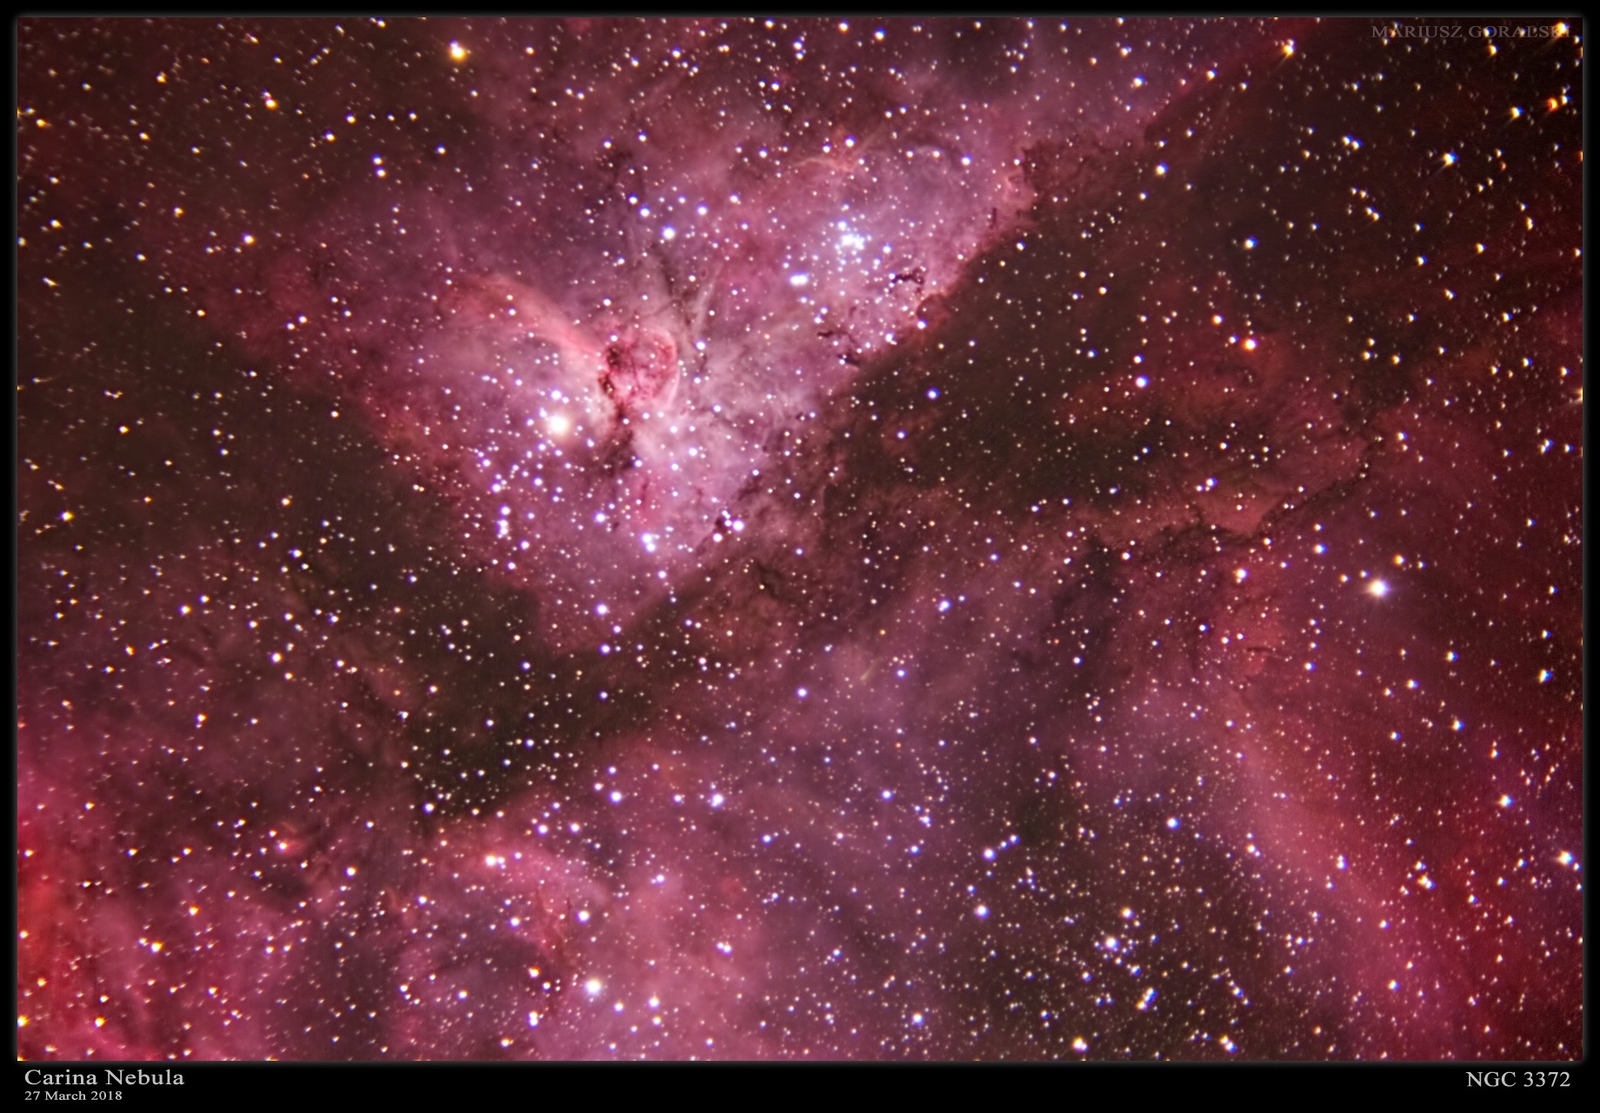 Carina Nebula at 1280mm (~59x39 arc-minutes FOV)